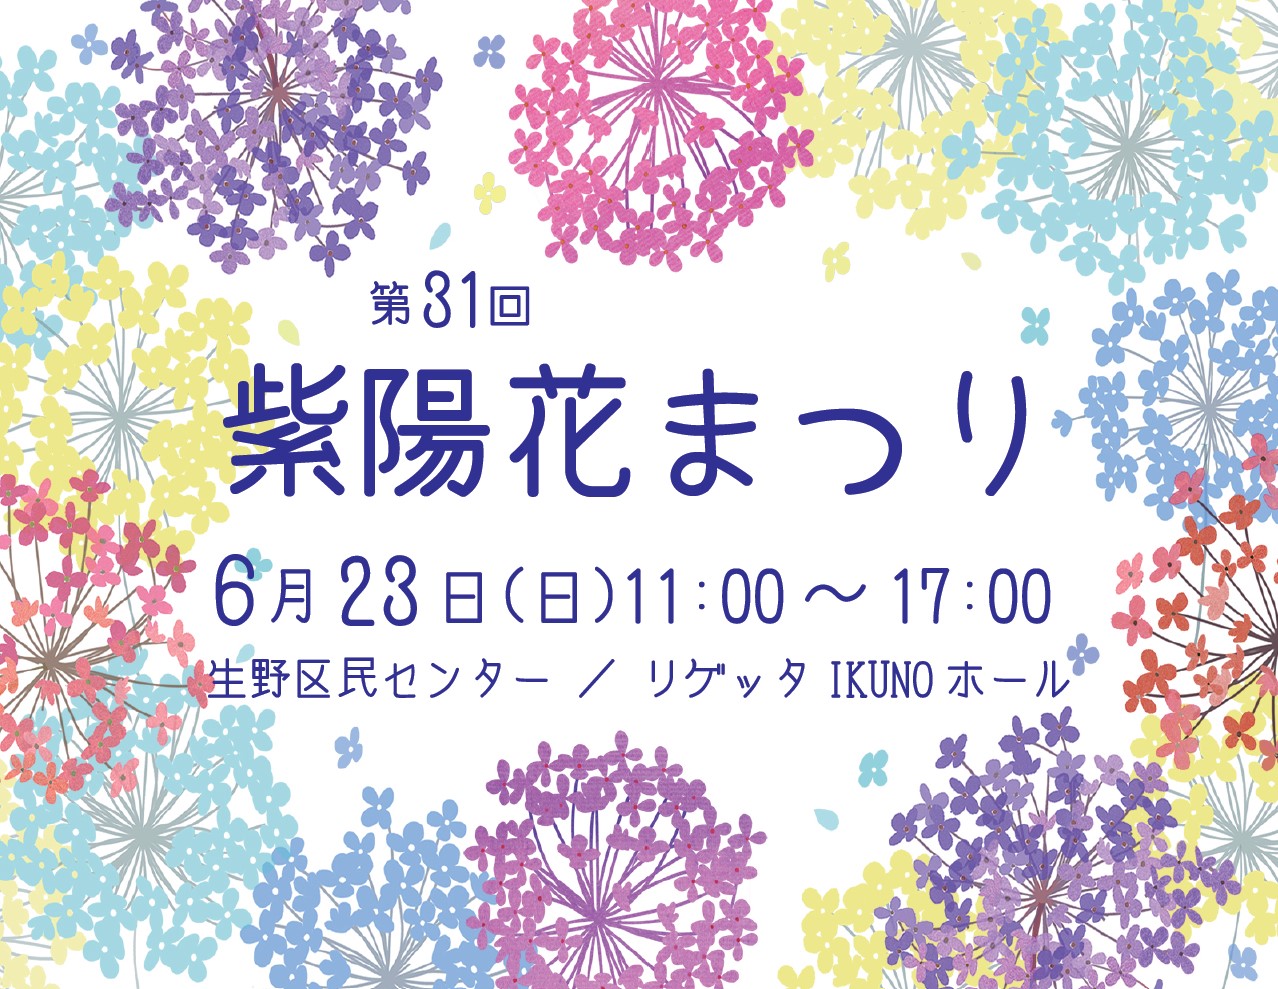 【イベント】第31回 生野区紫陽花まつり【入場無料】